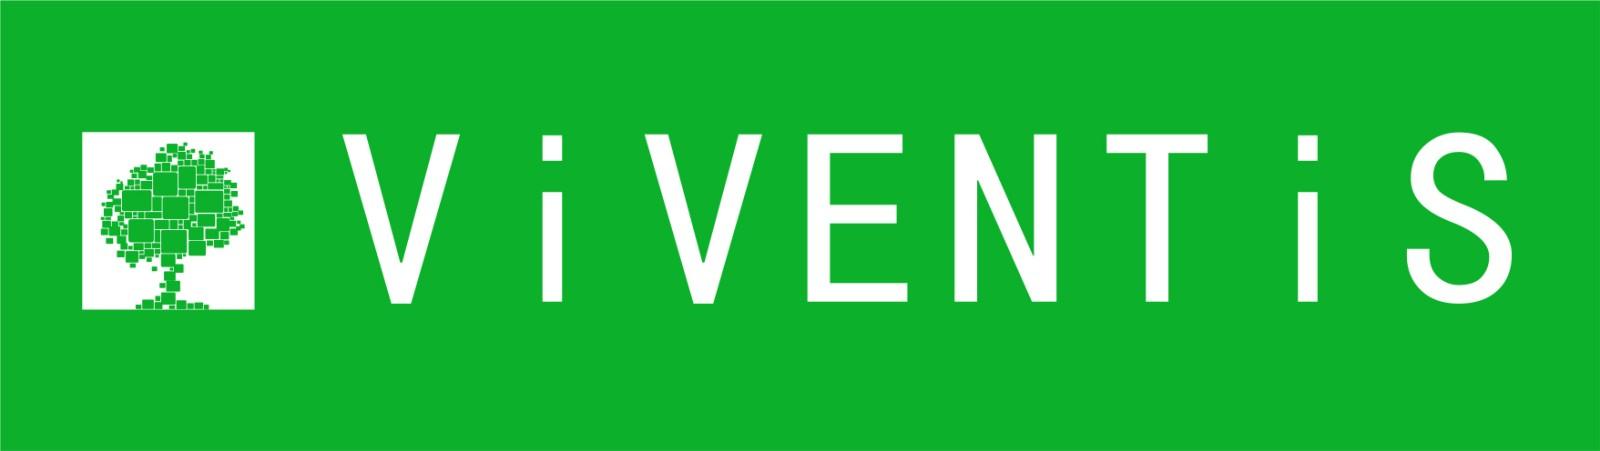 Viventis Search Asia